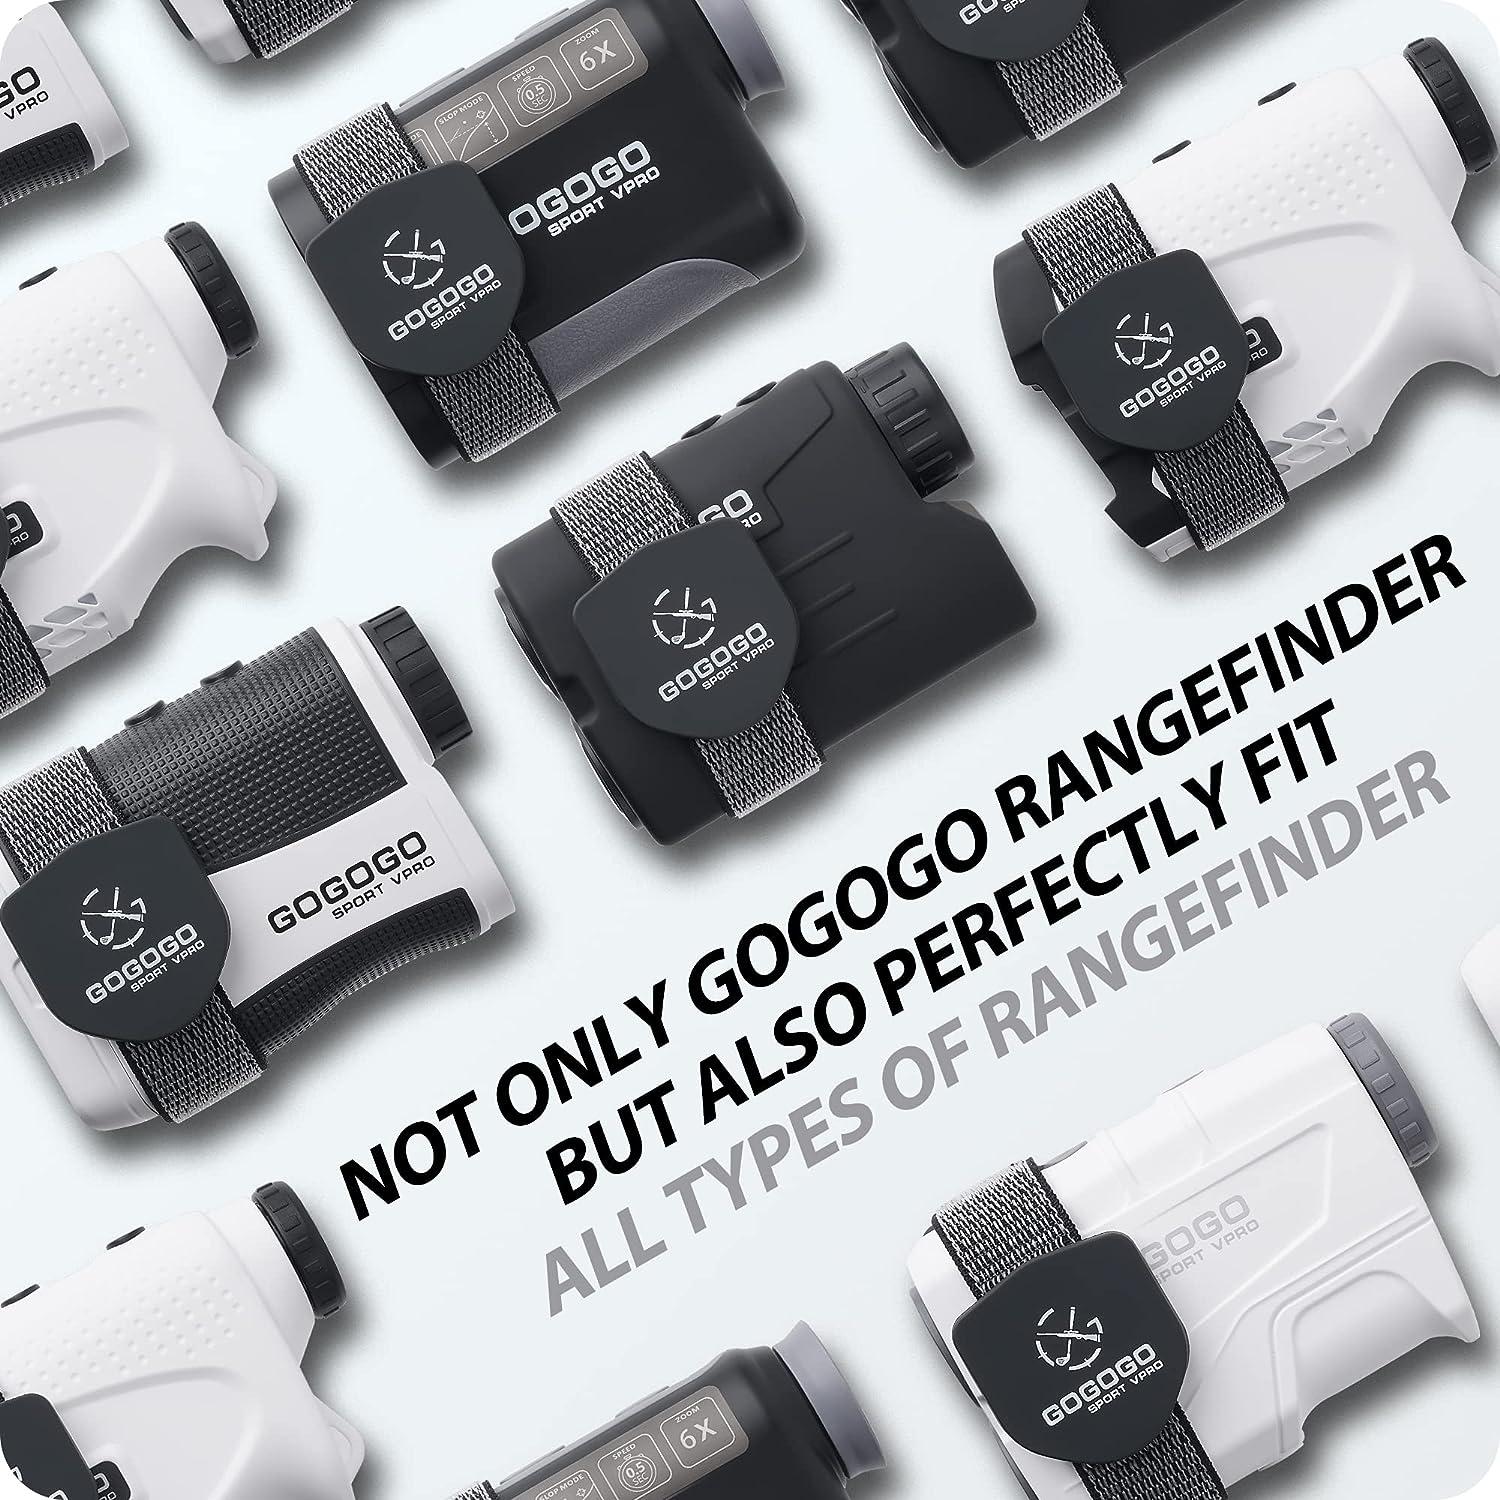 GoGoGo Sport VPro Laser Rangefinder - User Review 